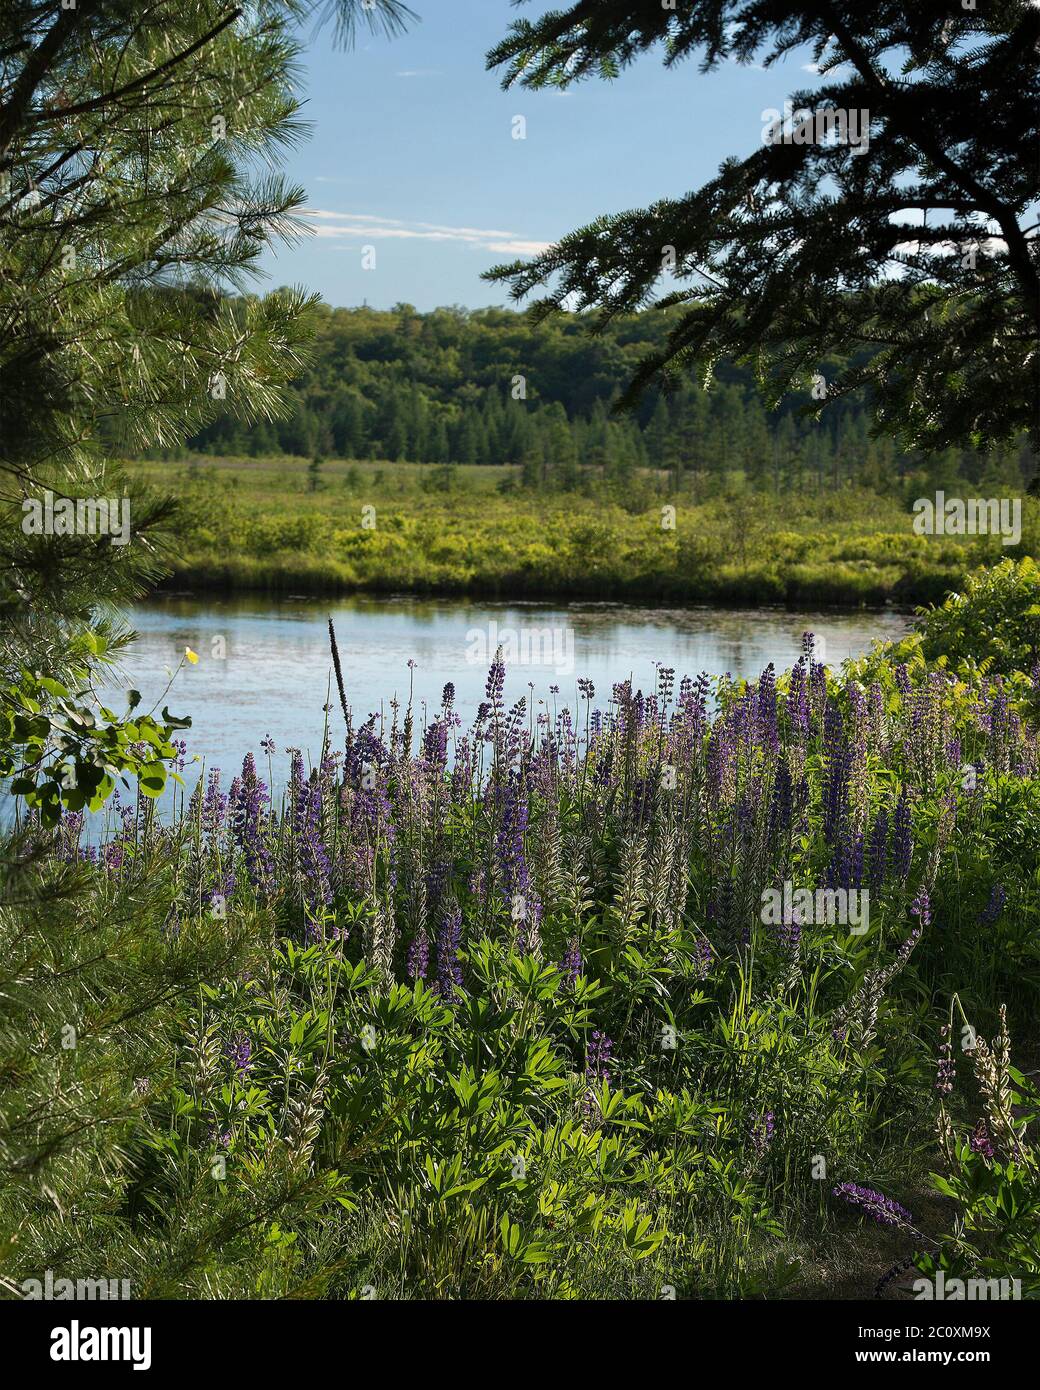 Fiori di Lupin viola selvatico nella foresta vicino a uno stagno con alberi, fogliame e un cielo blu e nuvole nel paesaggio estivo che mostra la sua stagione estiva. Foto Stock